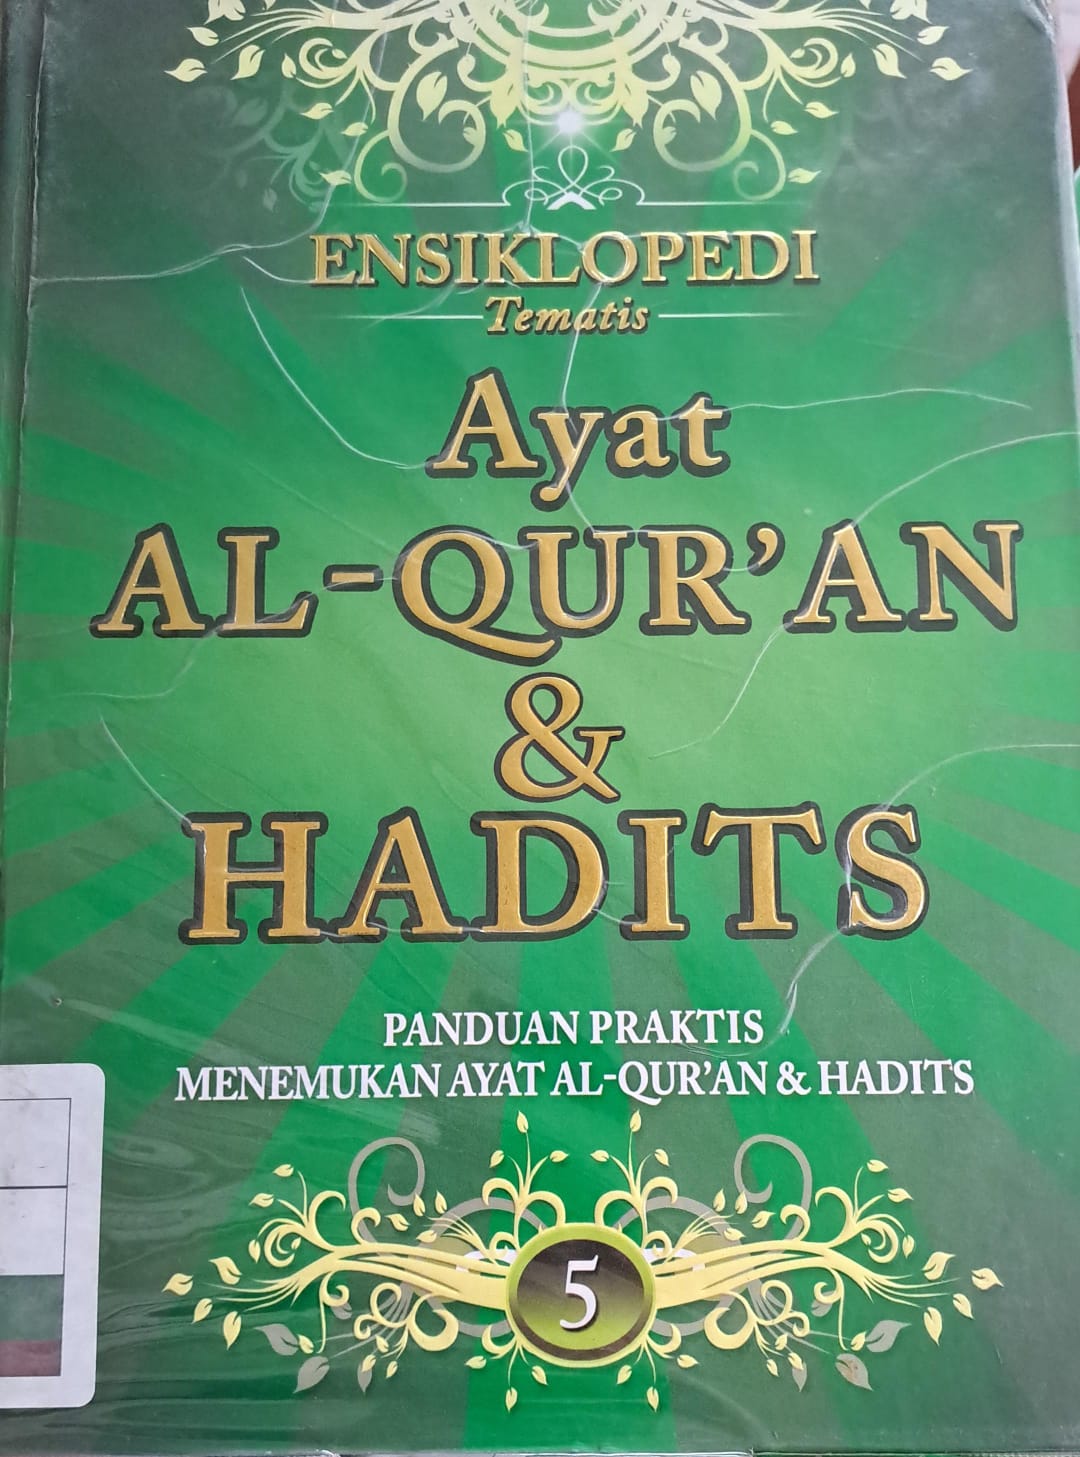 Ensiklopedi tematis ayat al-qur'an dan hadits  jilid 5 :  Panduan praktis menemukan ayat al-qur'an & hadits